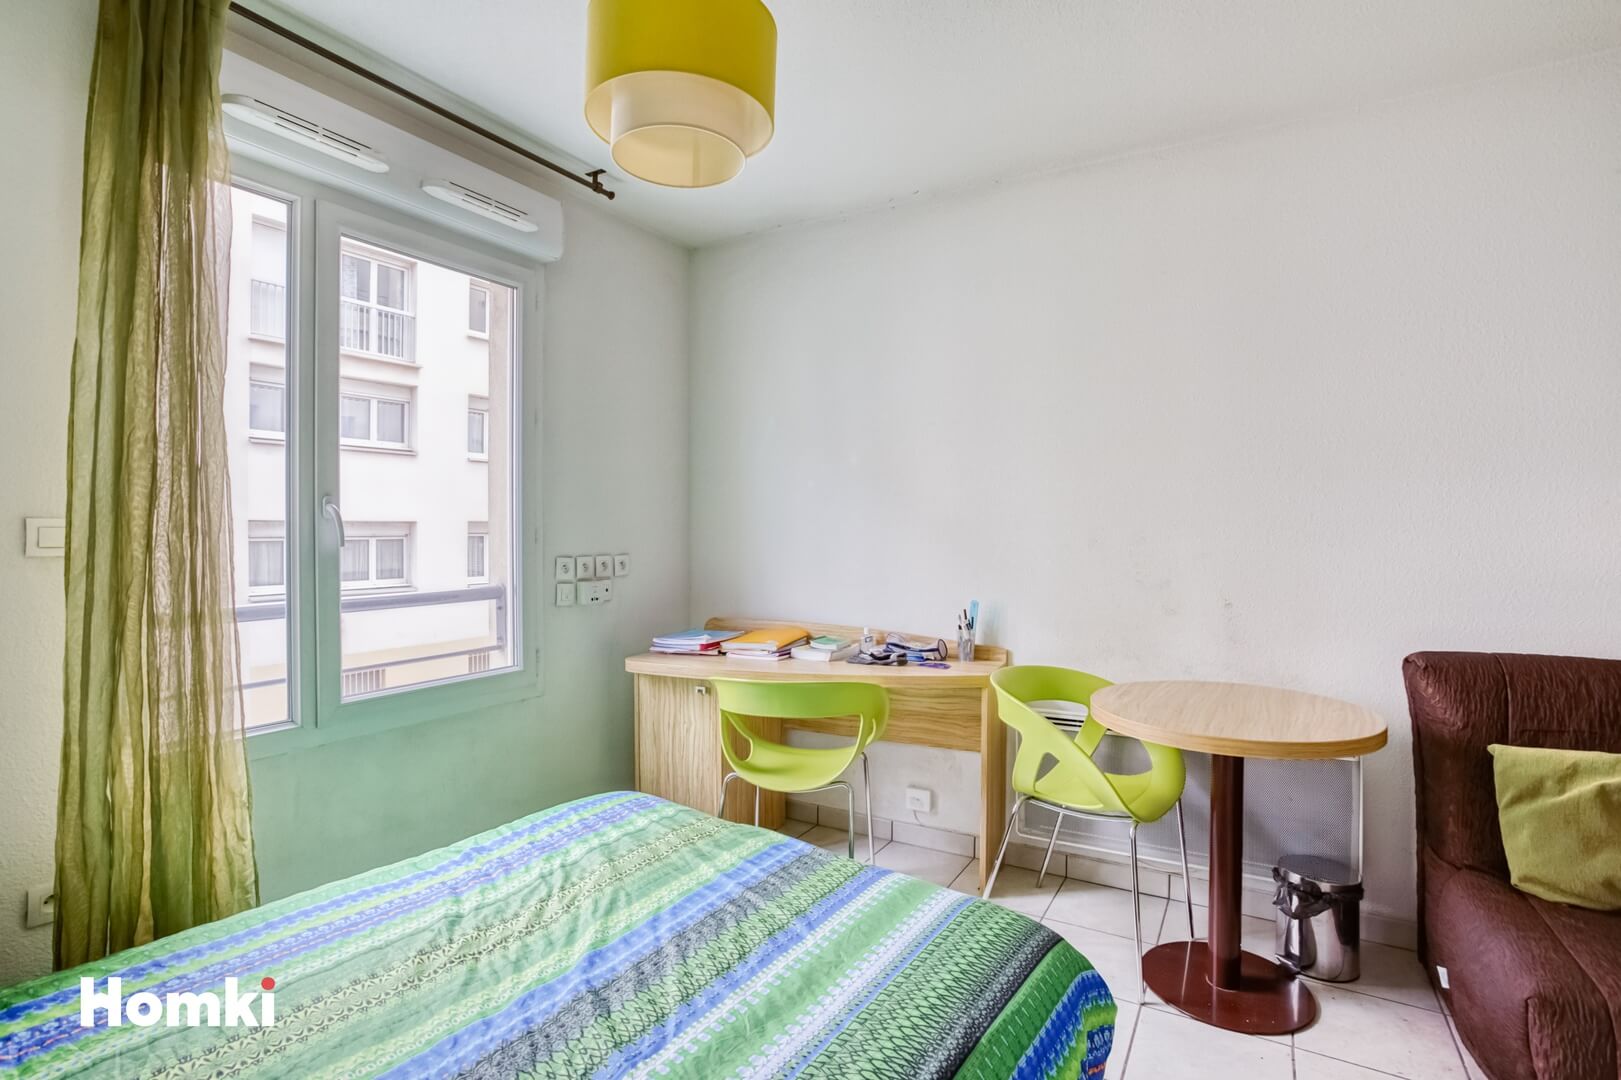 Homki - Vente Appartement  de 20.0 m² à Villeurbanne 69100